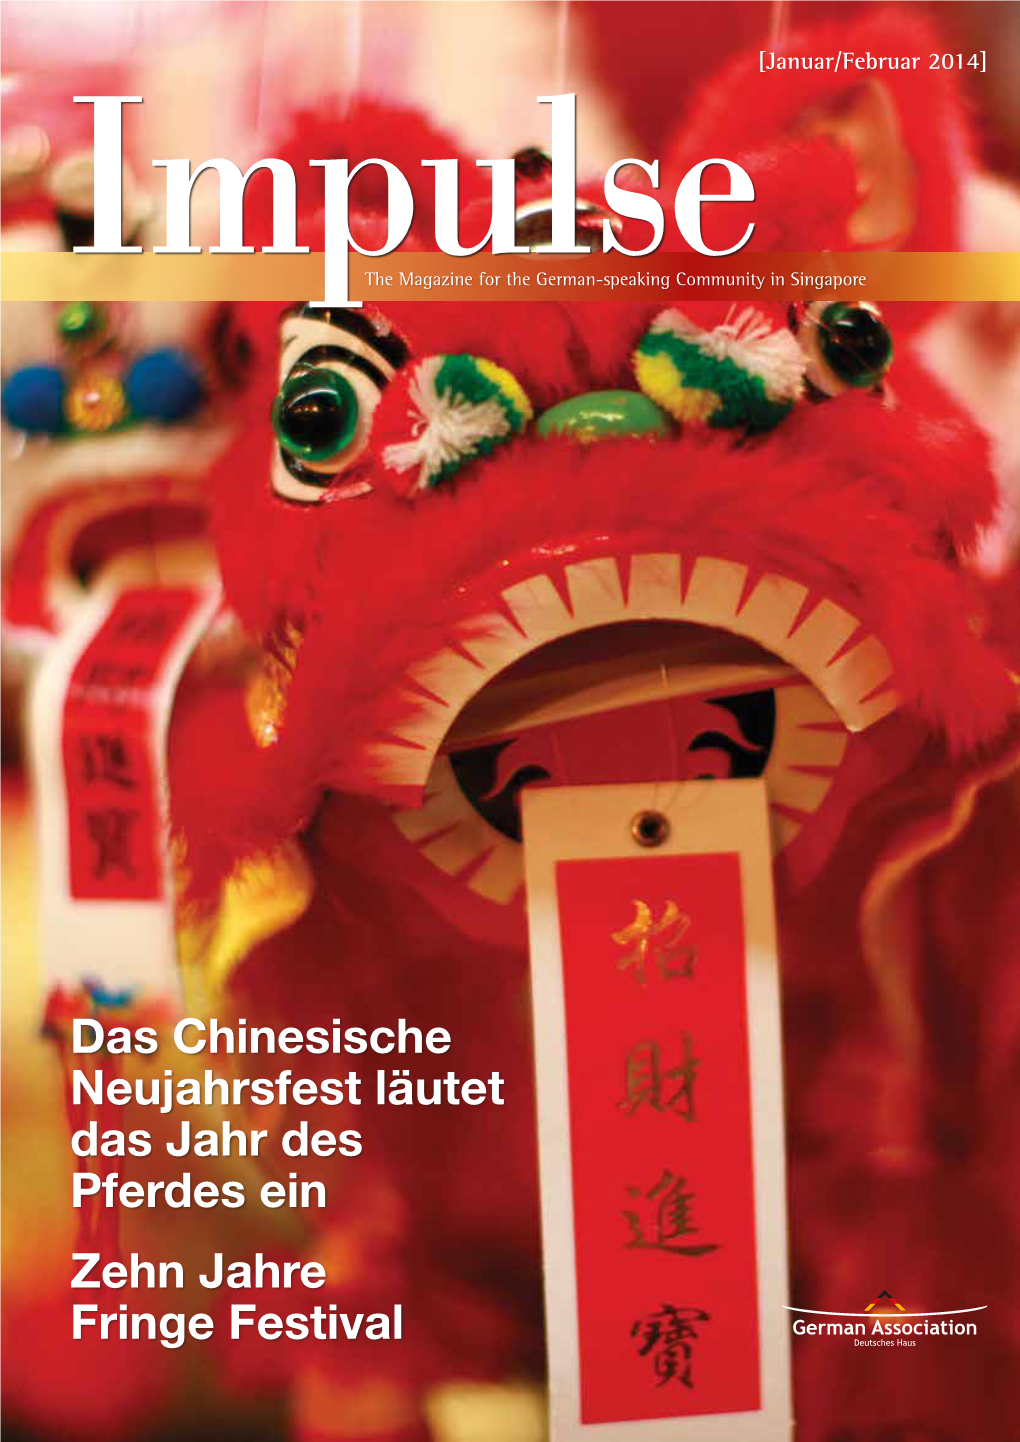 Das Chinesische Neujahrsfest Läutet Das Jahr Des Pferdes Ein Zehn Jahre Fringe Festival VW-065-T13 Impulse@Ft.Ai 1 6/12/13 5:04 PM